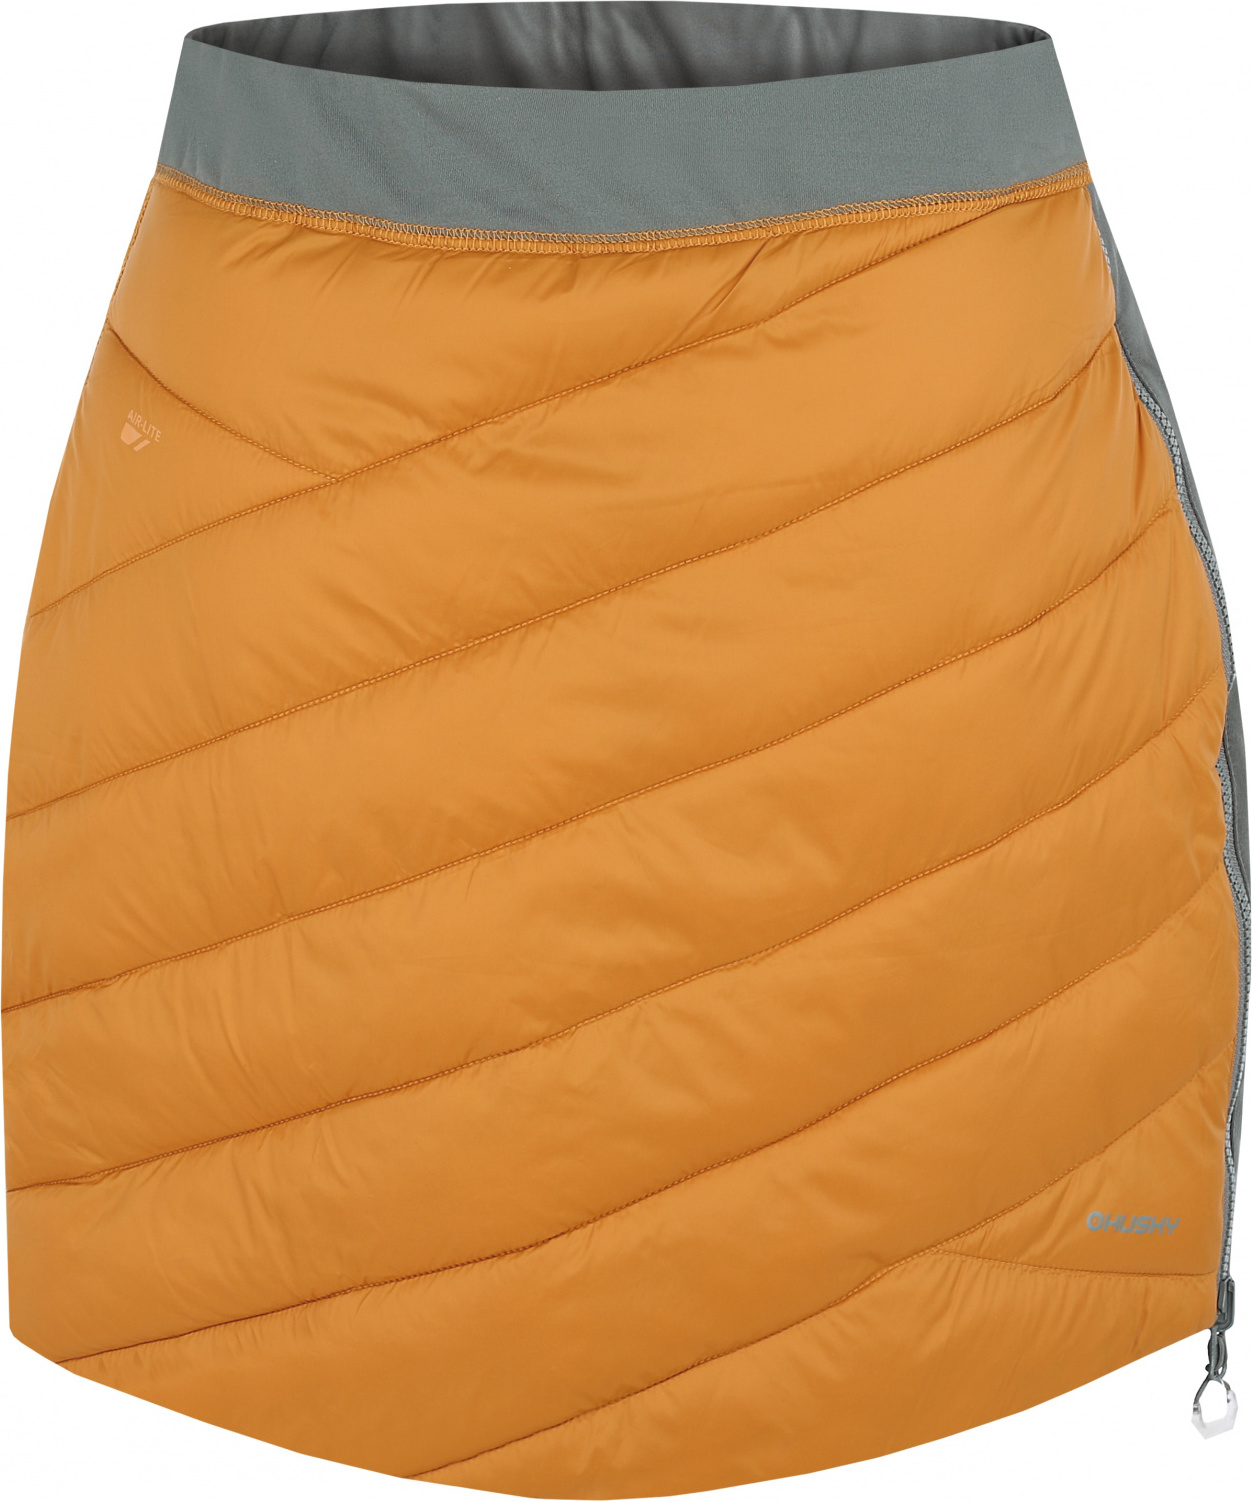 Dámská zimní sukně HUSKY Freez oranžová/khaki Velikost: L